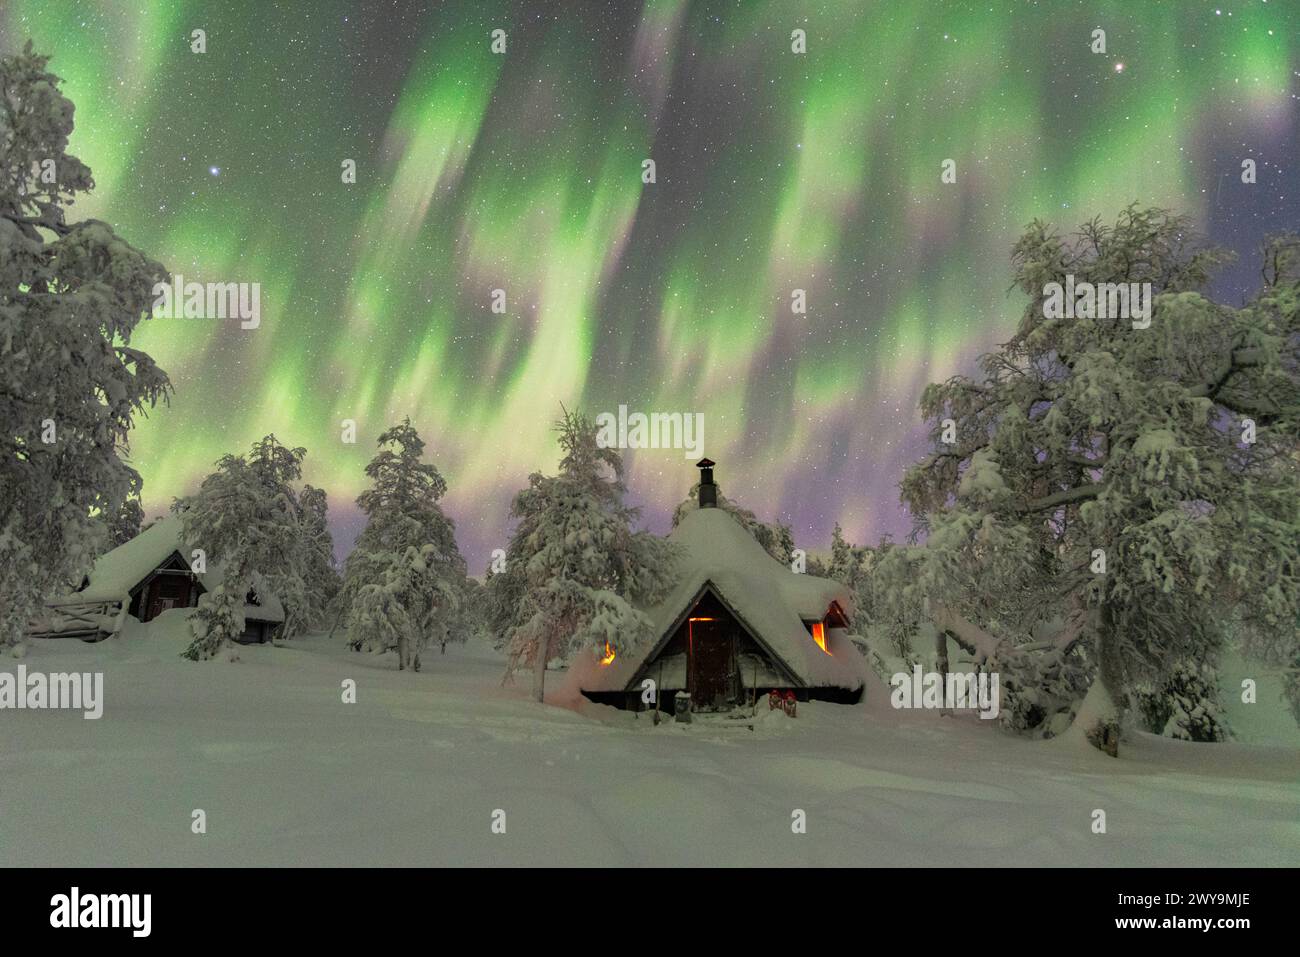 Vista invernale di una tipica capanna di legno illuminata dal fuoco nella foresta ghiacciata durante una tempesta dell'aurora boreale, Lapponia finlandese, Finlandia, Europ Foto Stock